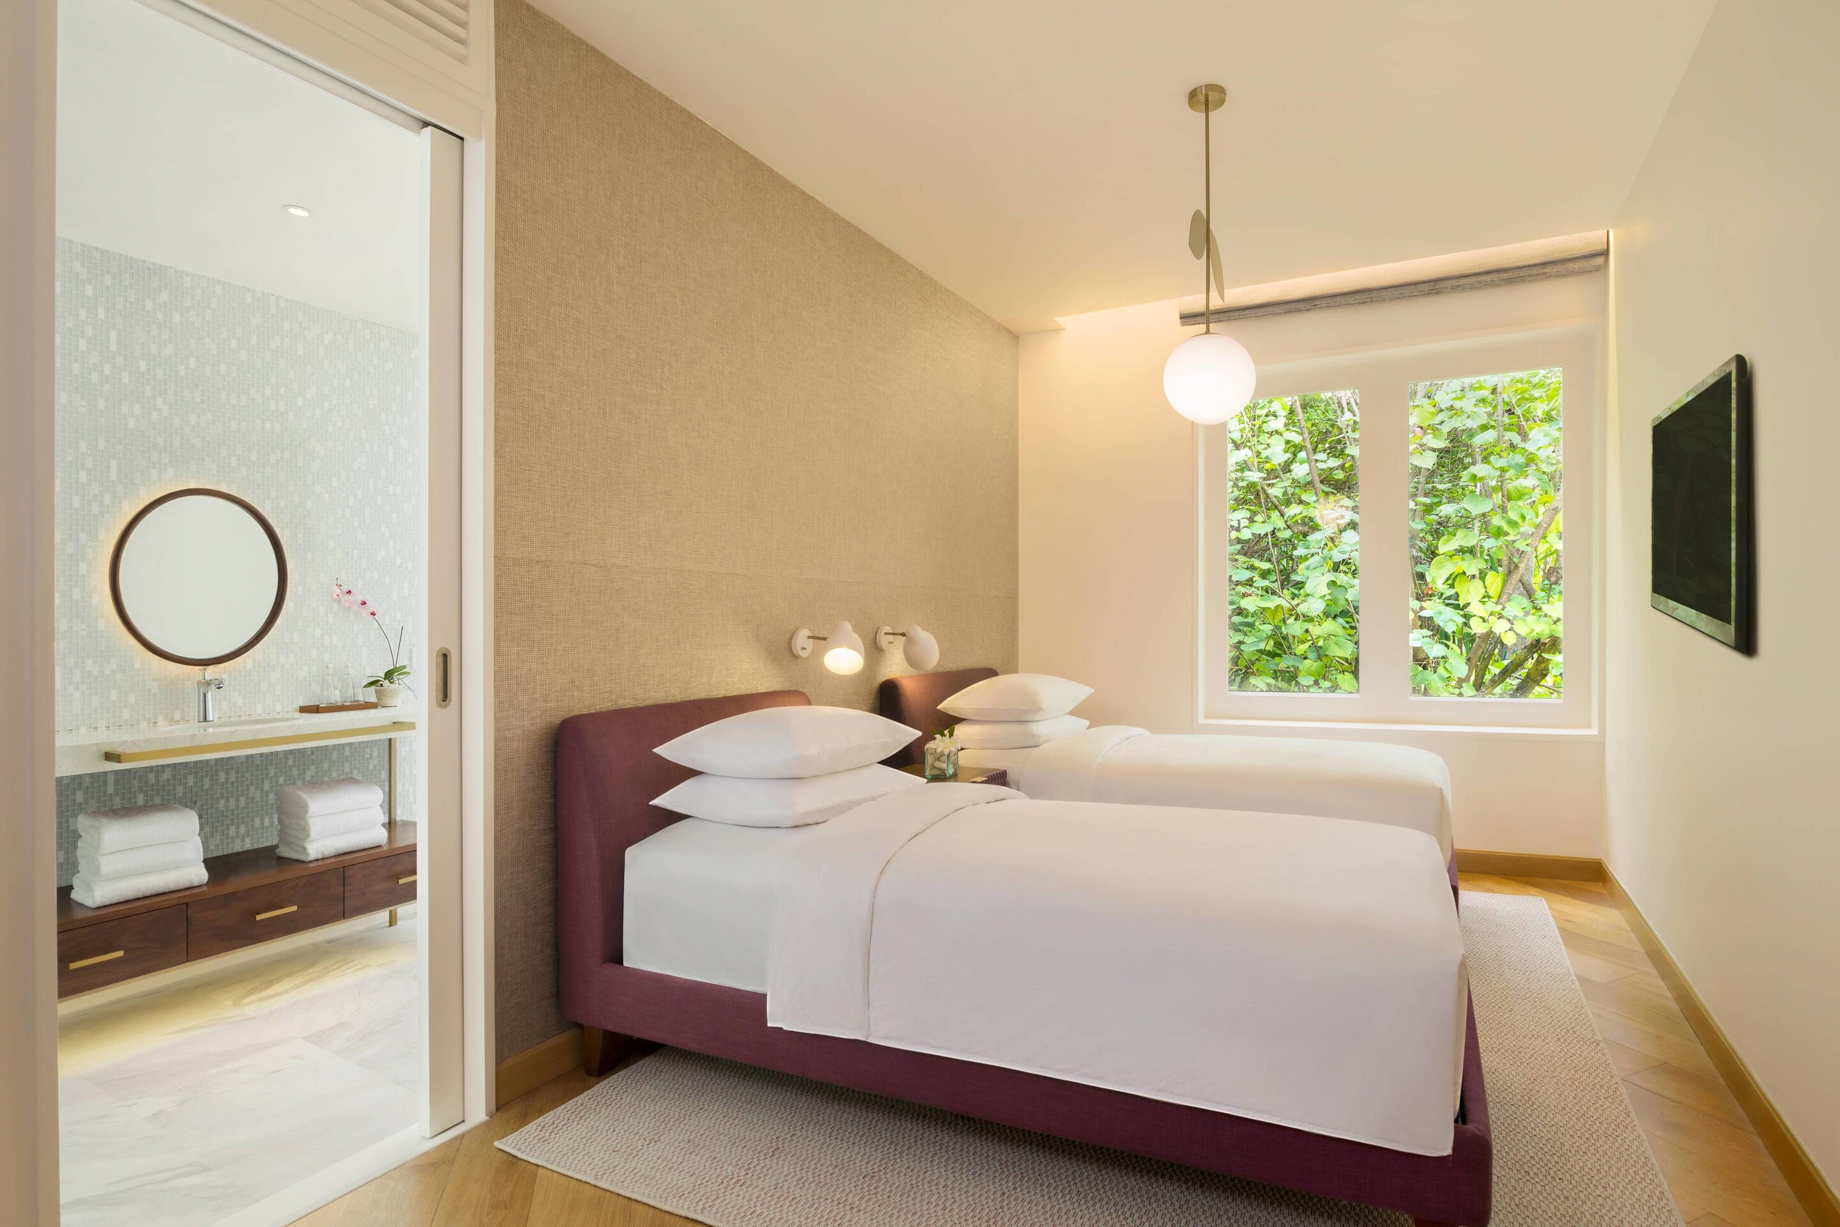 JW Marriott Maldives Resort & Spa – Shaviyani Atoll, Maldives – Duplex Beach Pool Villa Twin Bedroom